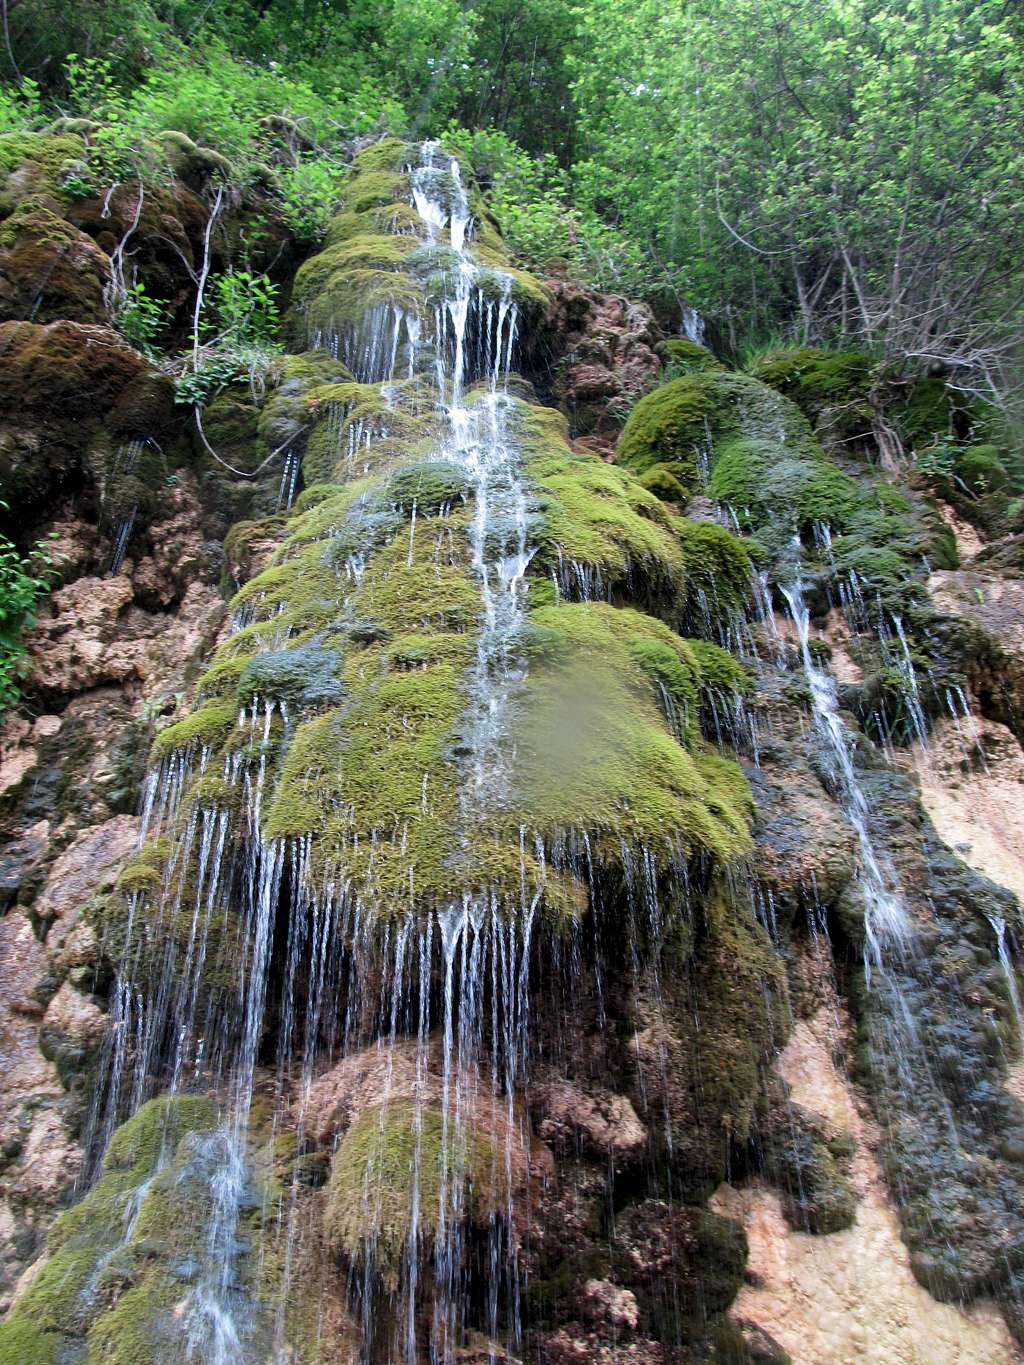 AbPari(Water Fairy) Waterfall